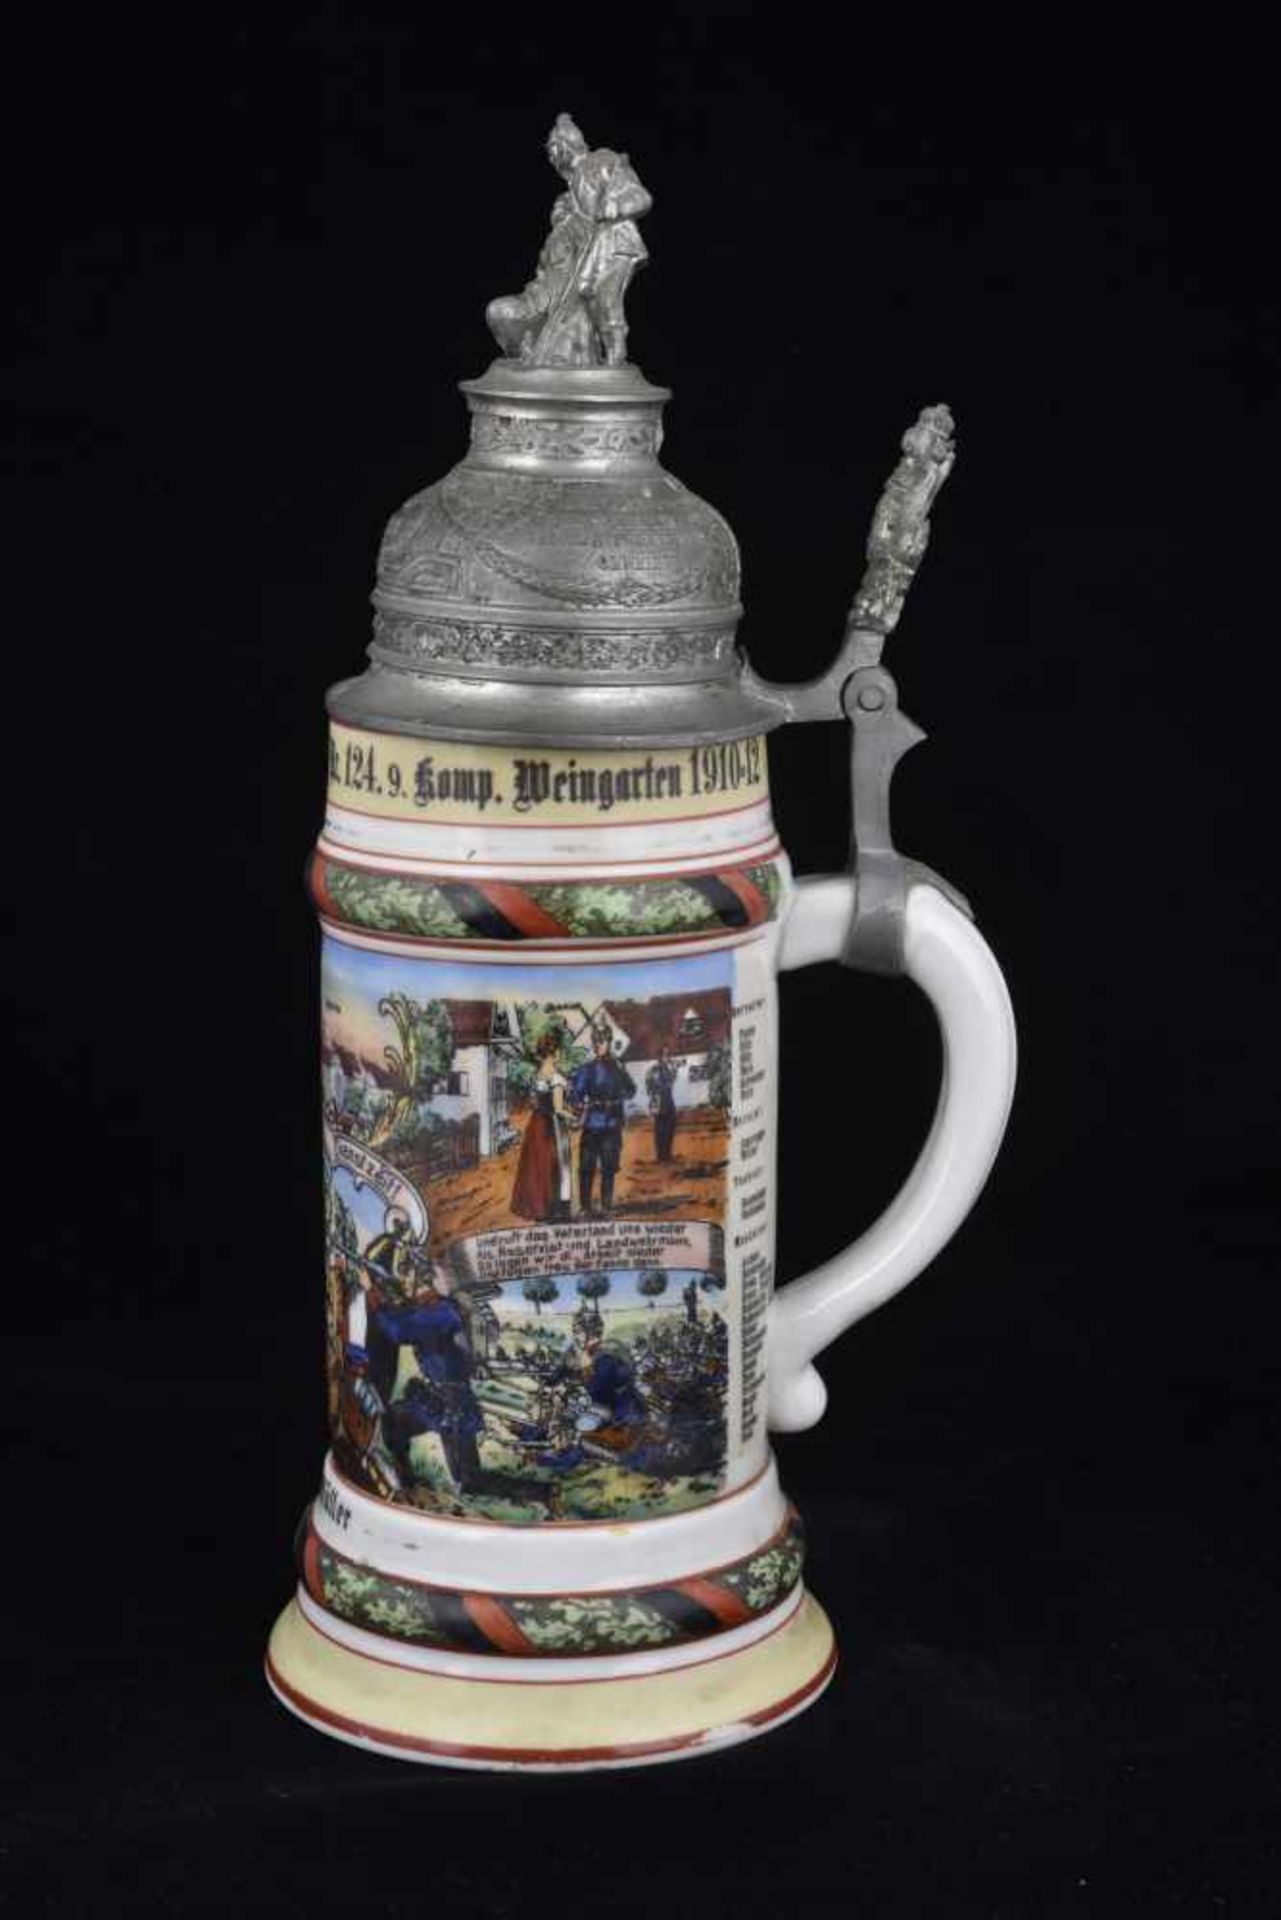 Chope de réserviste de l'Infanterie Chope en porcelaine d'un demi-litre attribuée à : Inf. Regt. - Image 3 of 4